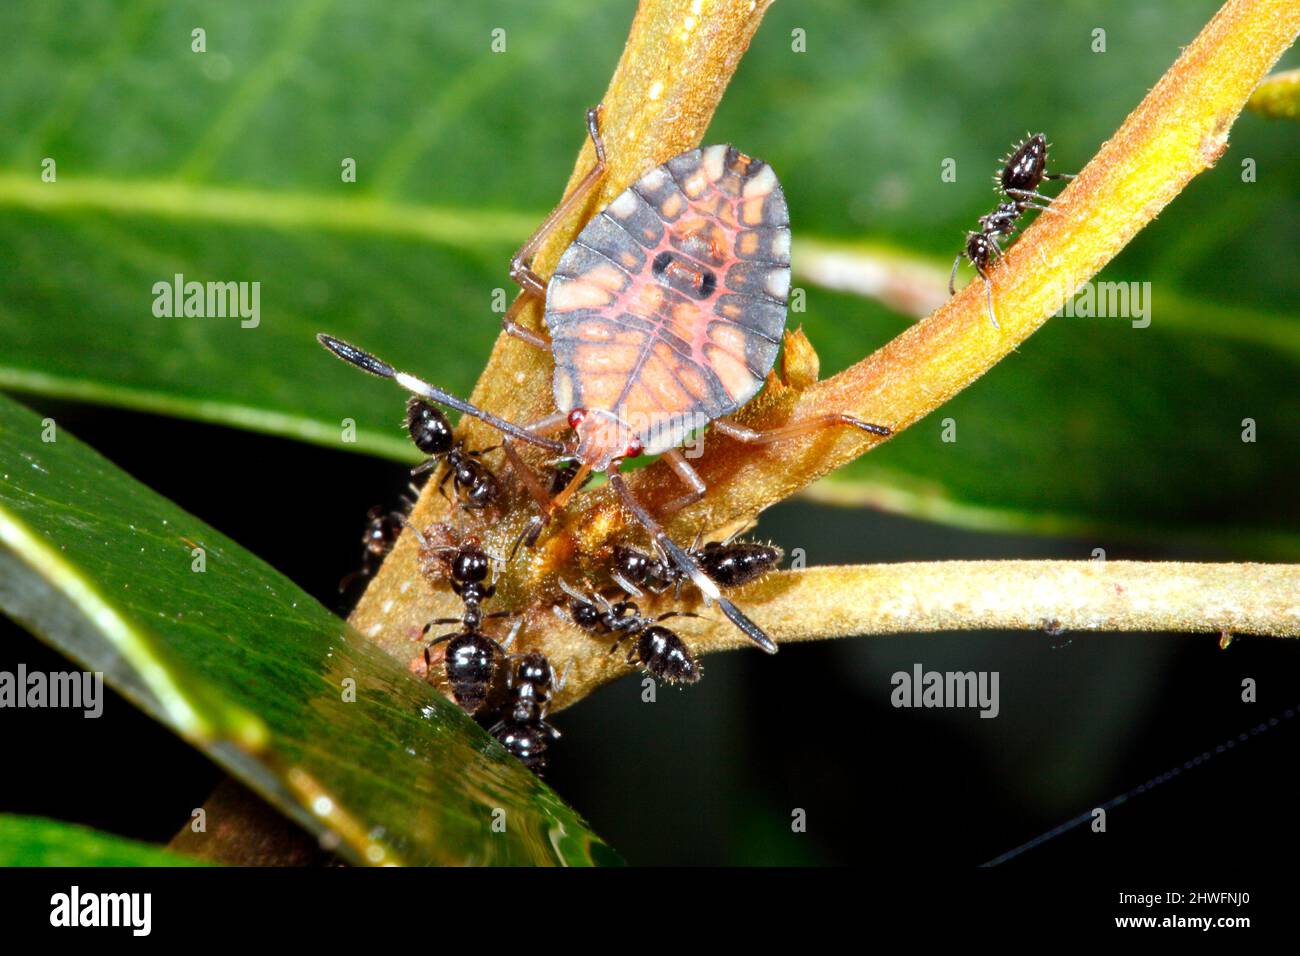 Litschi Stinkt Käfer. Lyramorph rosea. Auch bekannt als Litchi Stink Bug. Kleine Nymphe mit Ameisen, die Saft aus einem Ast trinkt. Coffs Harbour, Australien Stockfoto